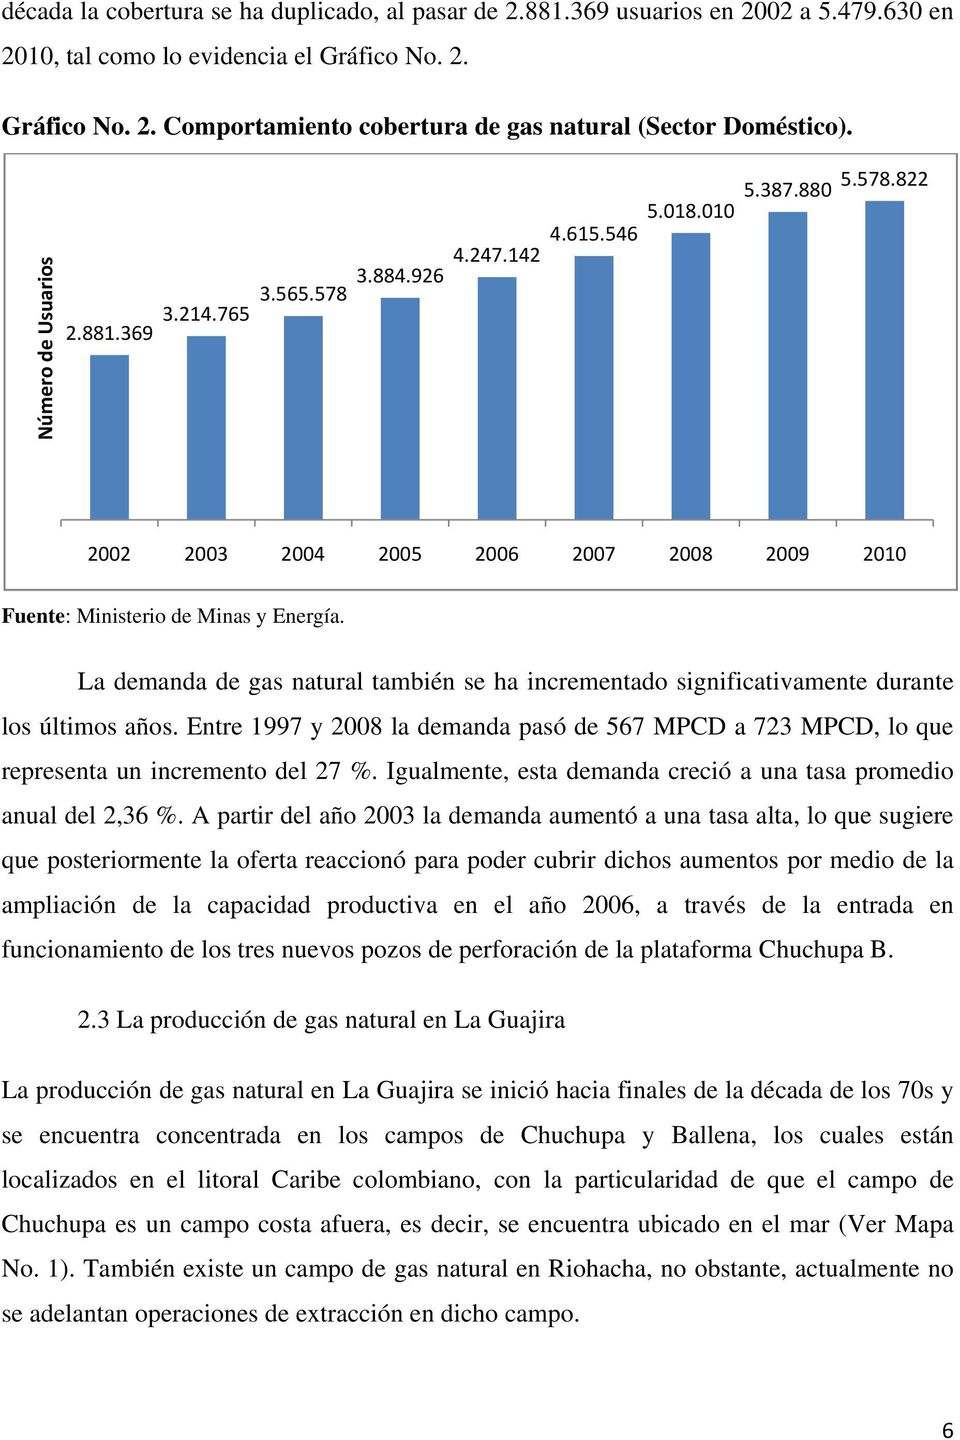 La demanda de gas natural también se ha incrementado significativamente durante los últimos años. Entre 1997 y 2008 la demanda pasó de 567 MPCD a 723 MPCD, lo que representa un incremento del 27 %.